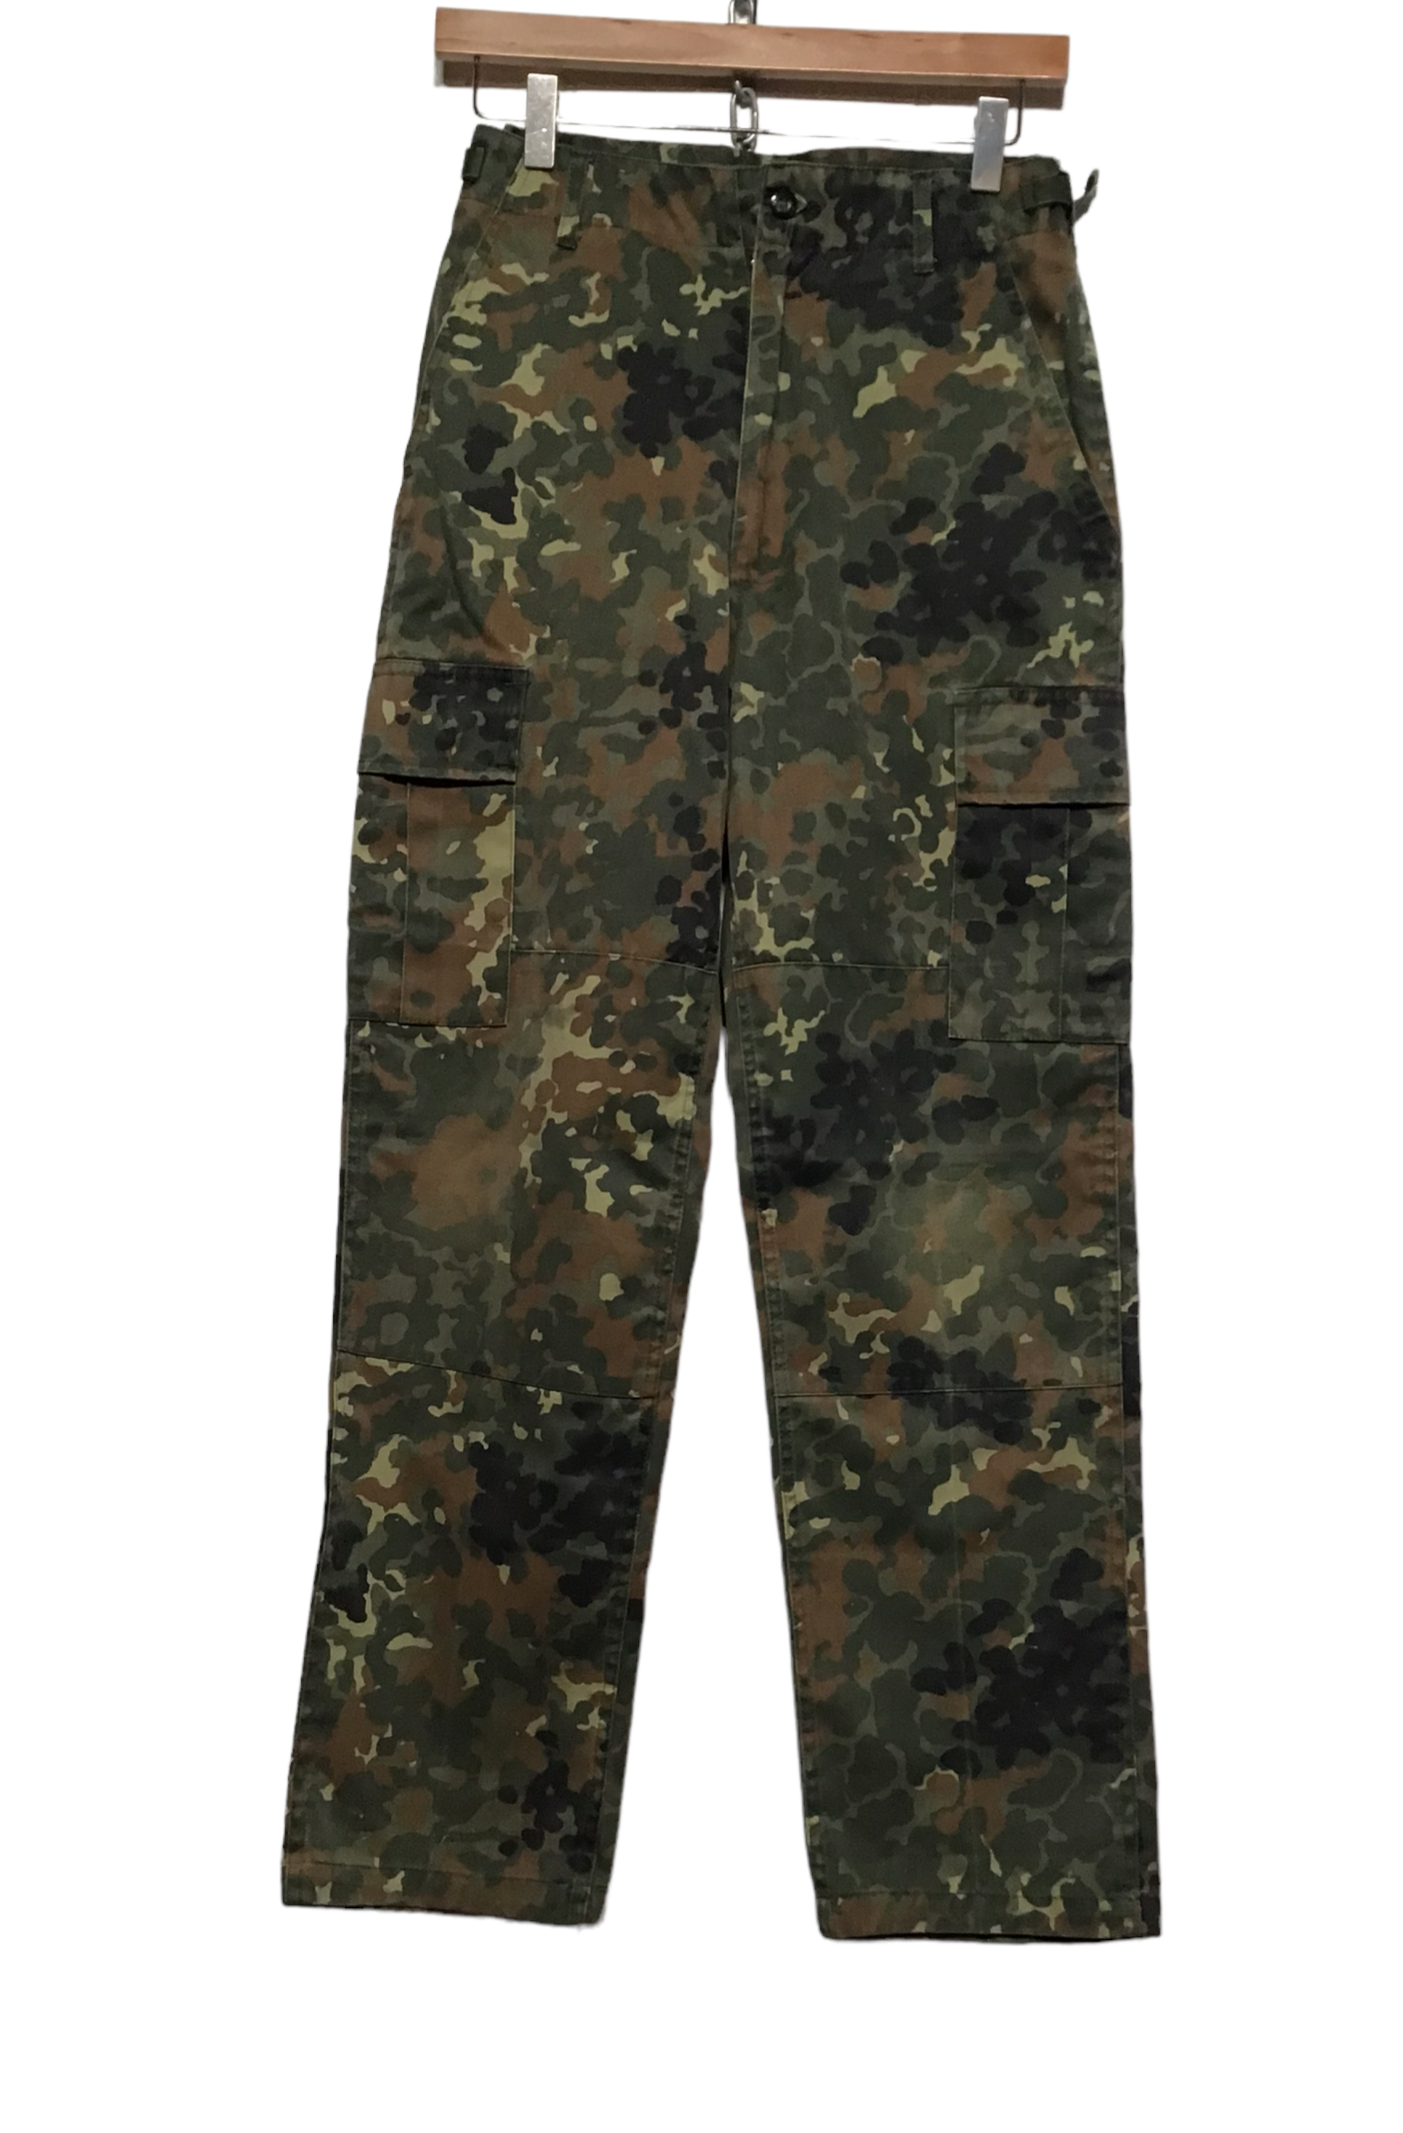 Army Pants (27X27)